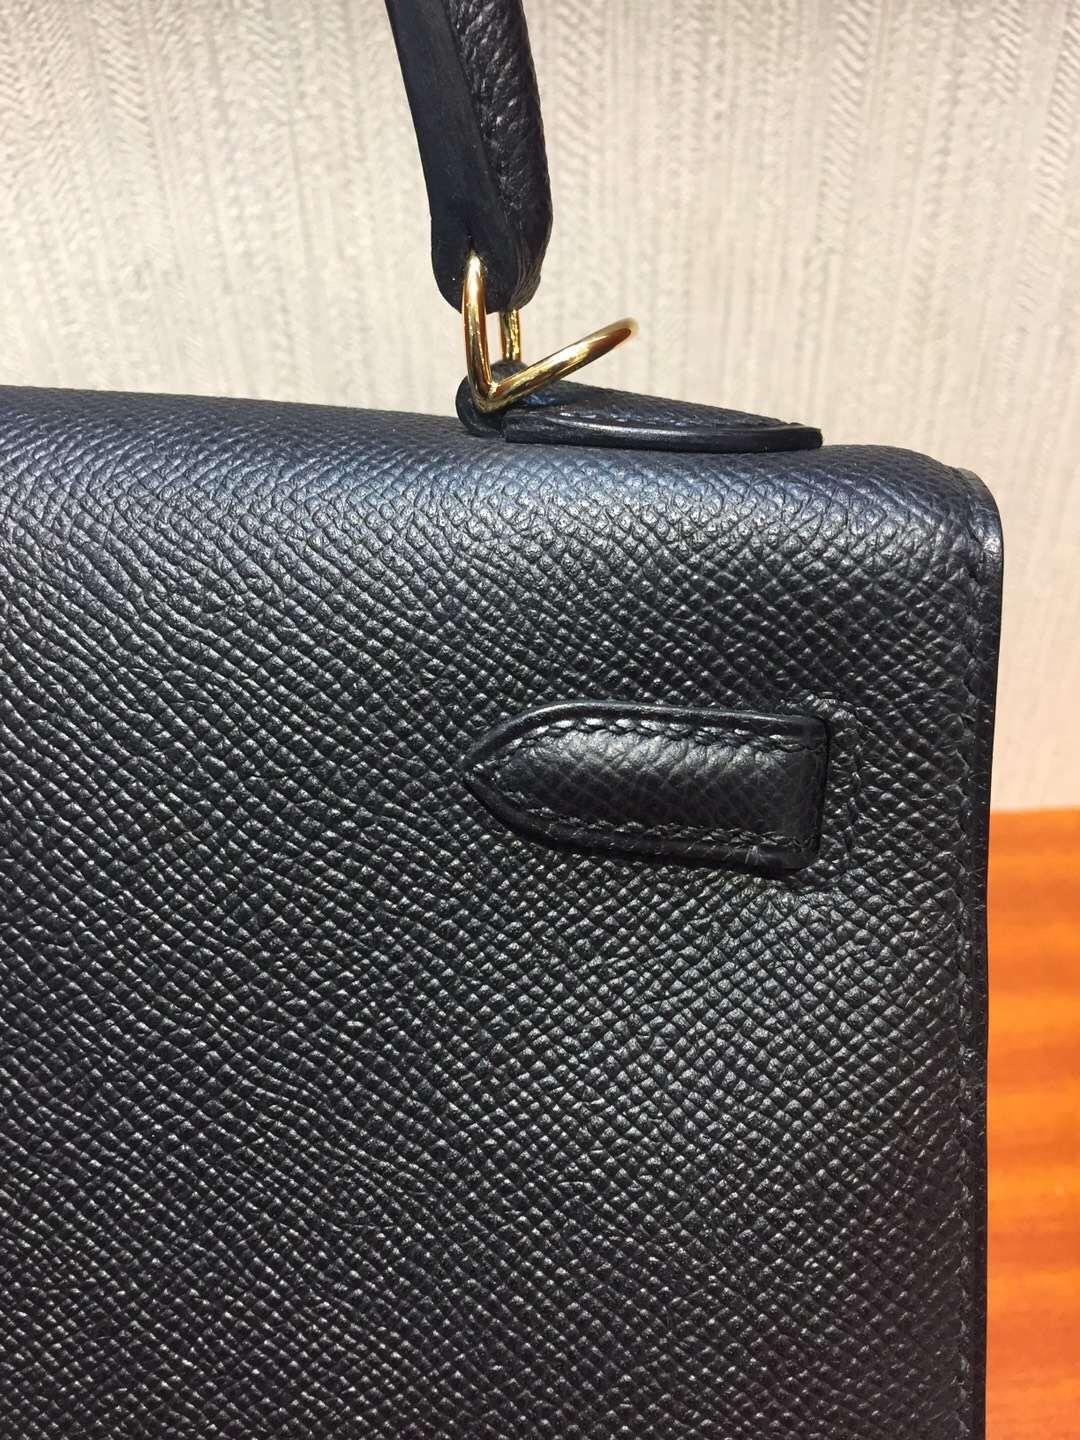 Australia Hermes Kelly bag 25cm CK89黑色 Epsom掌紋牛皮 金扣